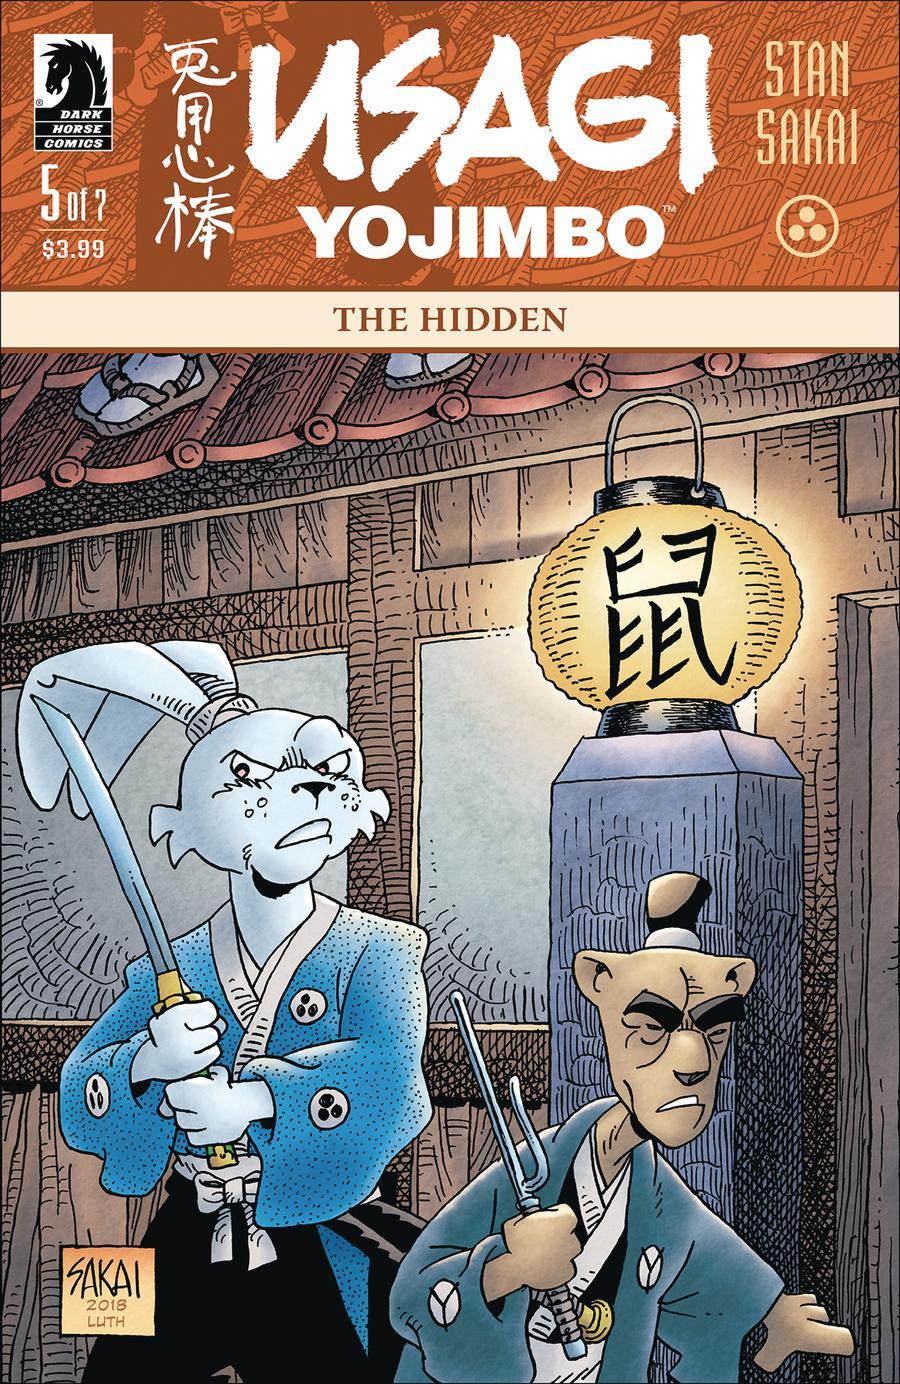 Usagi Yojimbo The Hidden Vol. 1 #5